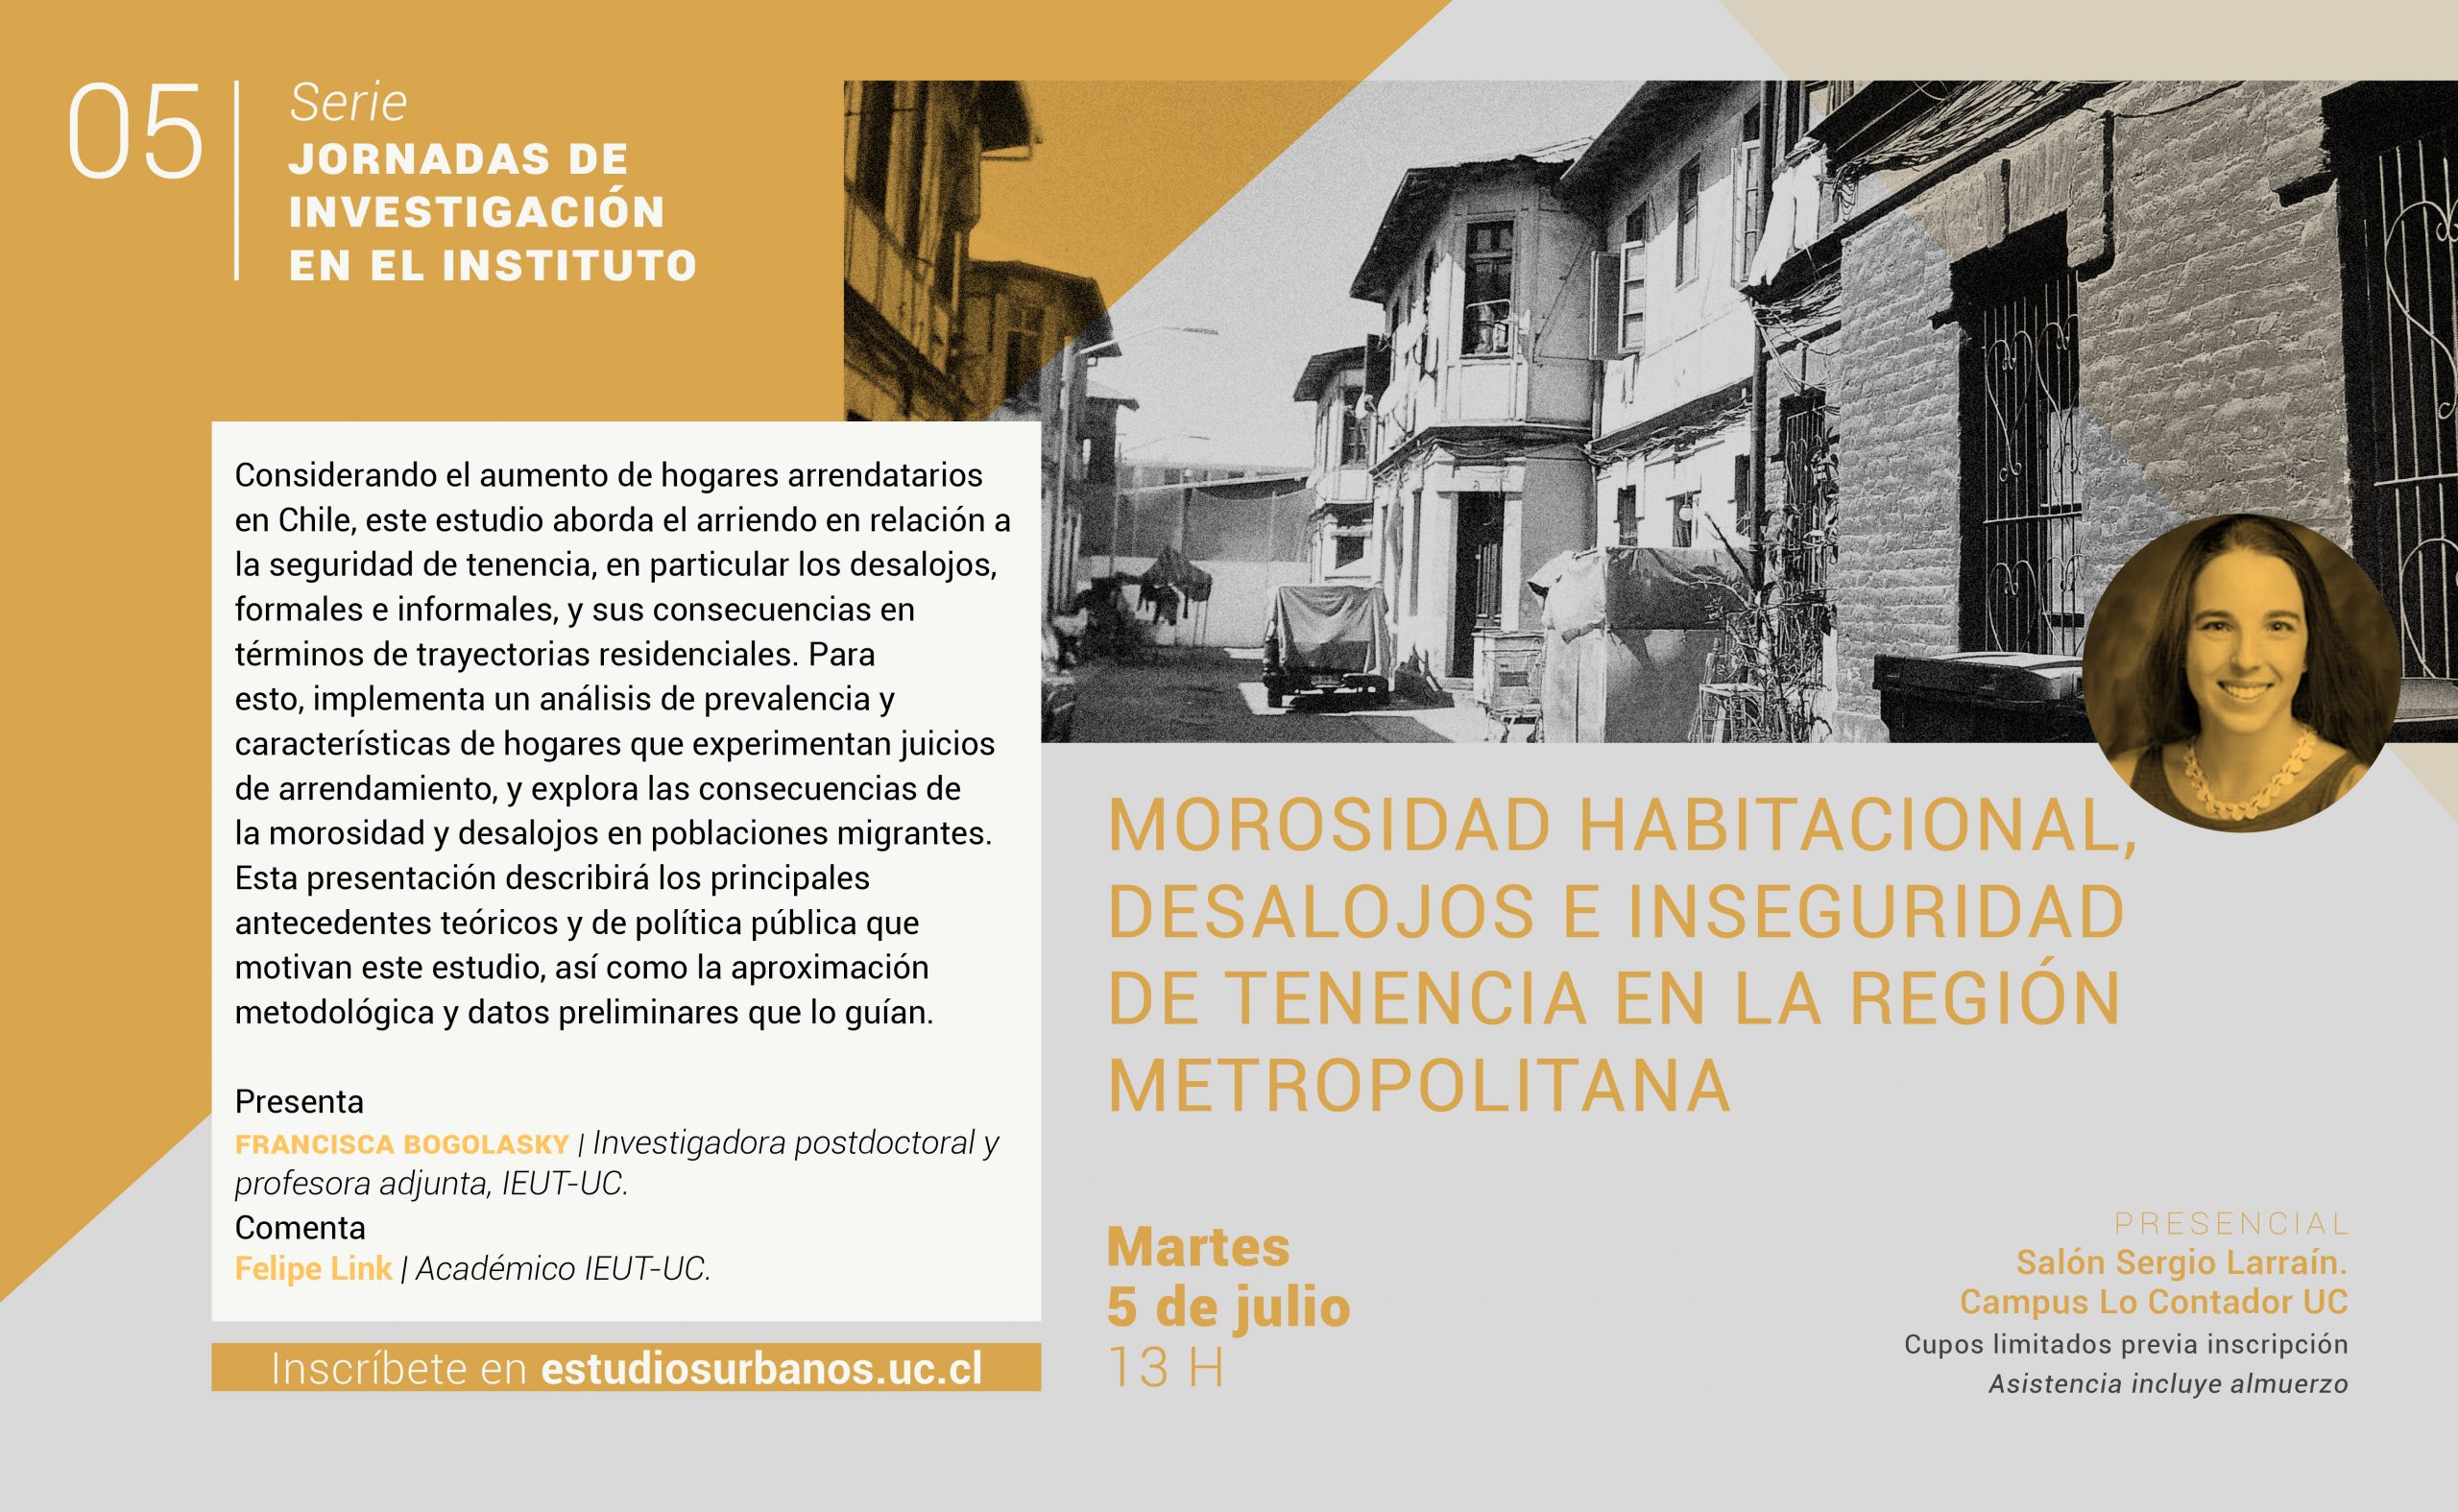 Jornada de investigación | 05 | Morosidad habitacional, desalojos e inseguridad de tenencia en la Región Metropolitana